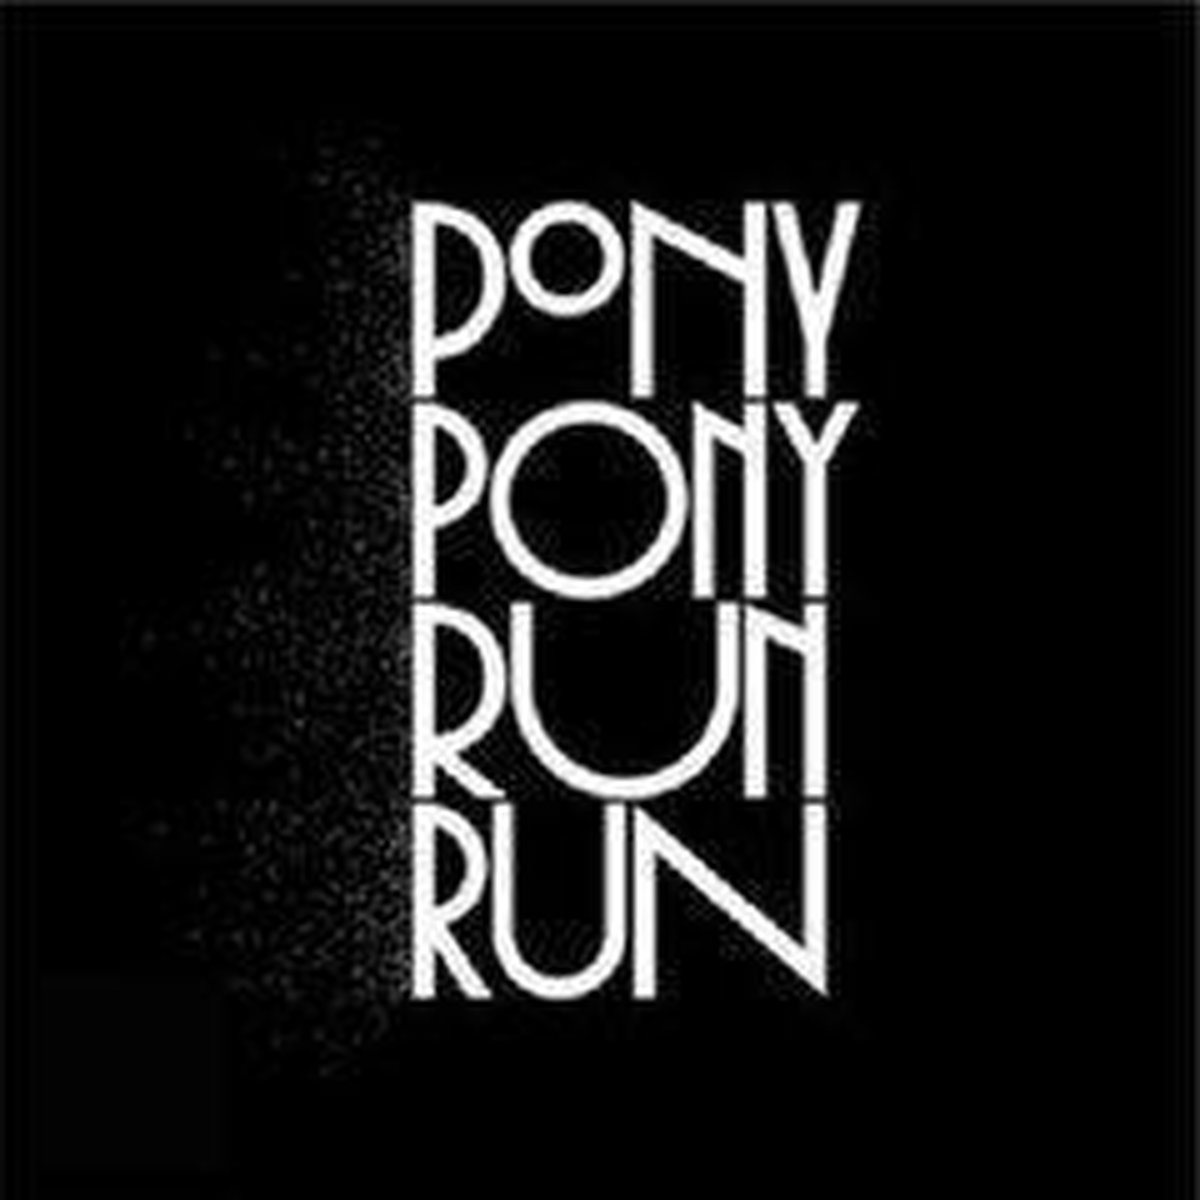 You Need Pony Pony Run Run | Pony Pony Run Run